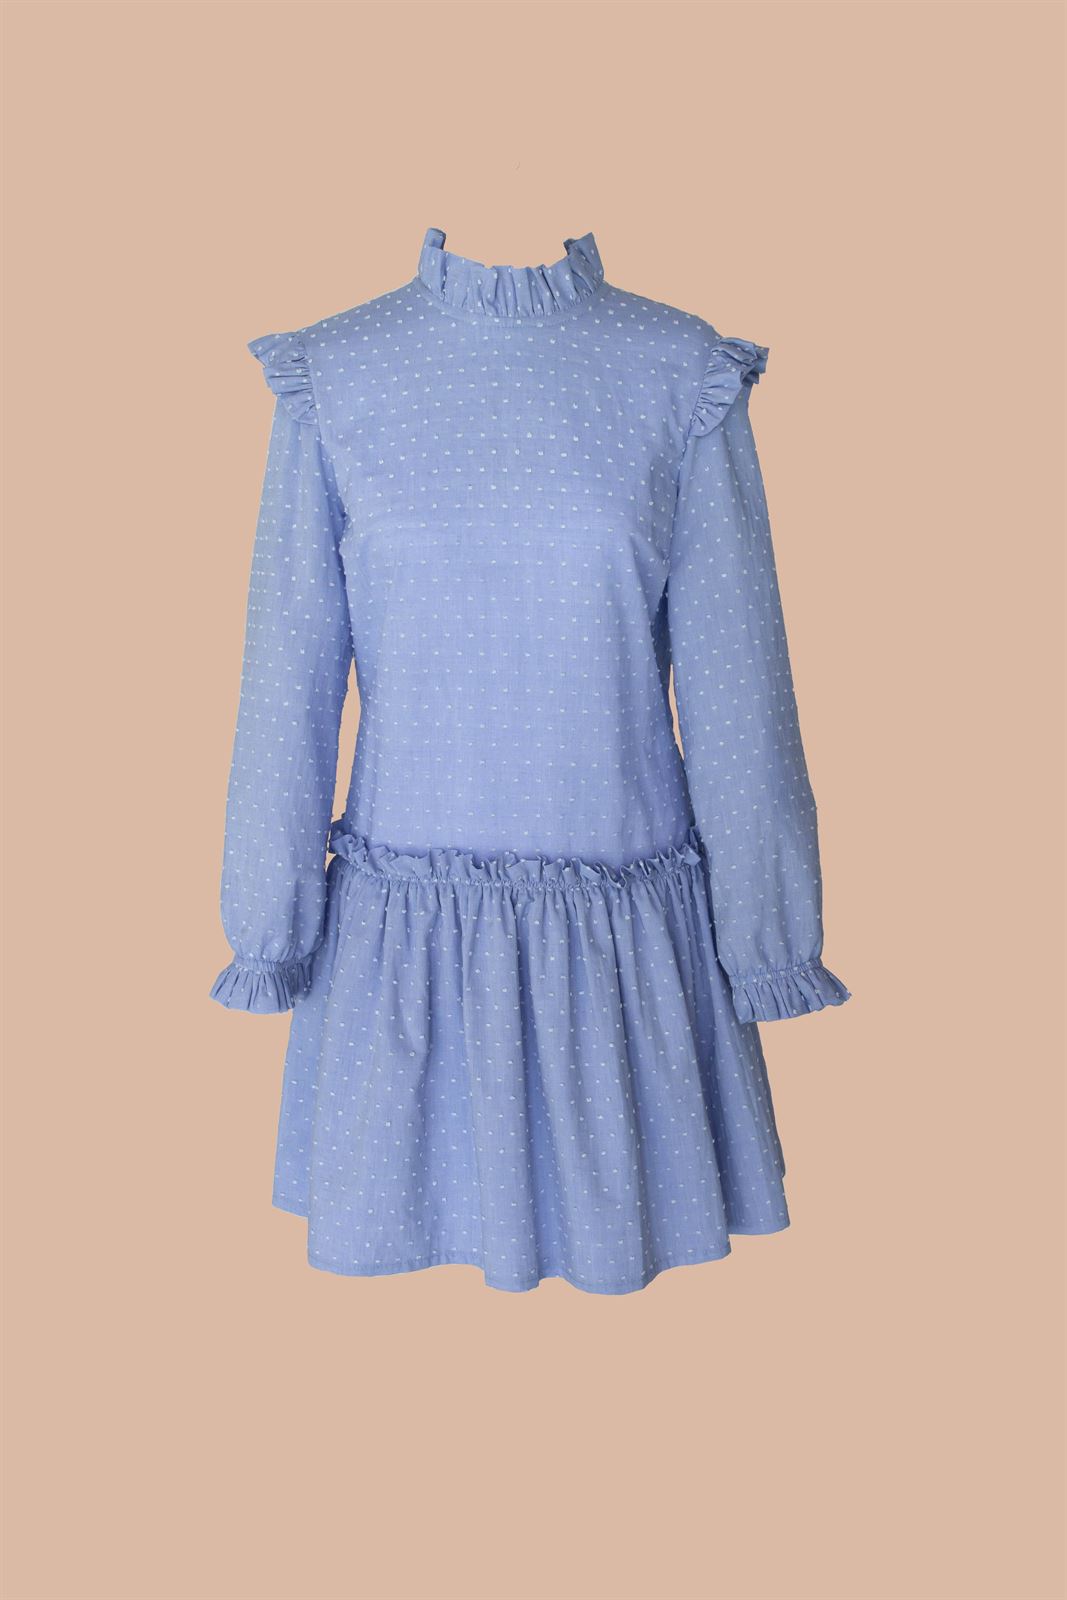 Vestido Lirio azul marino bordado al tono - Imagen 3